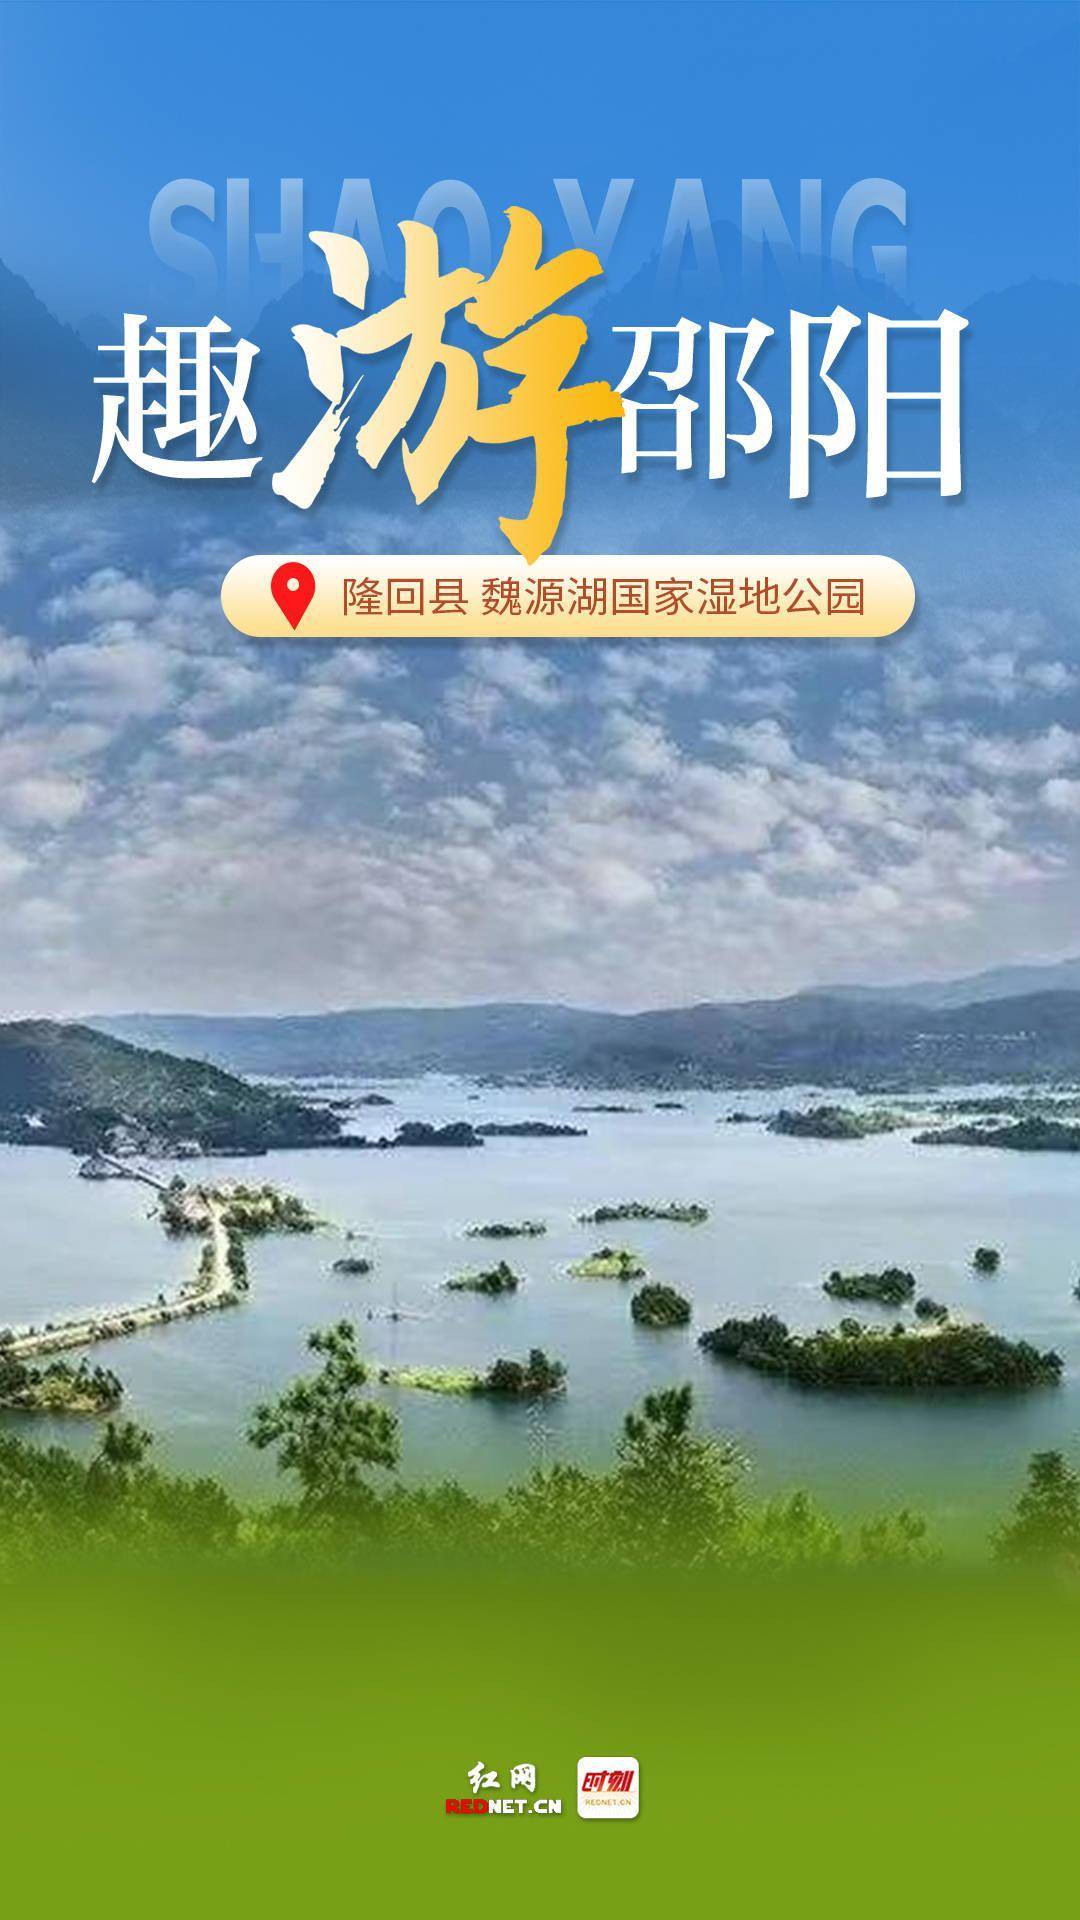 印象邵阳丨每日一景:隆回县魏源湖国家湿地公园